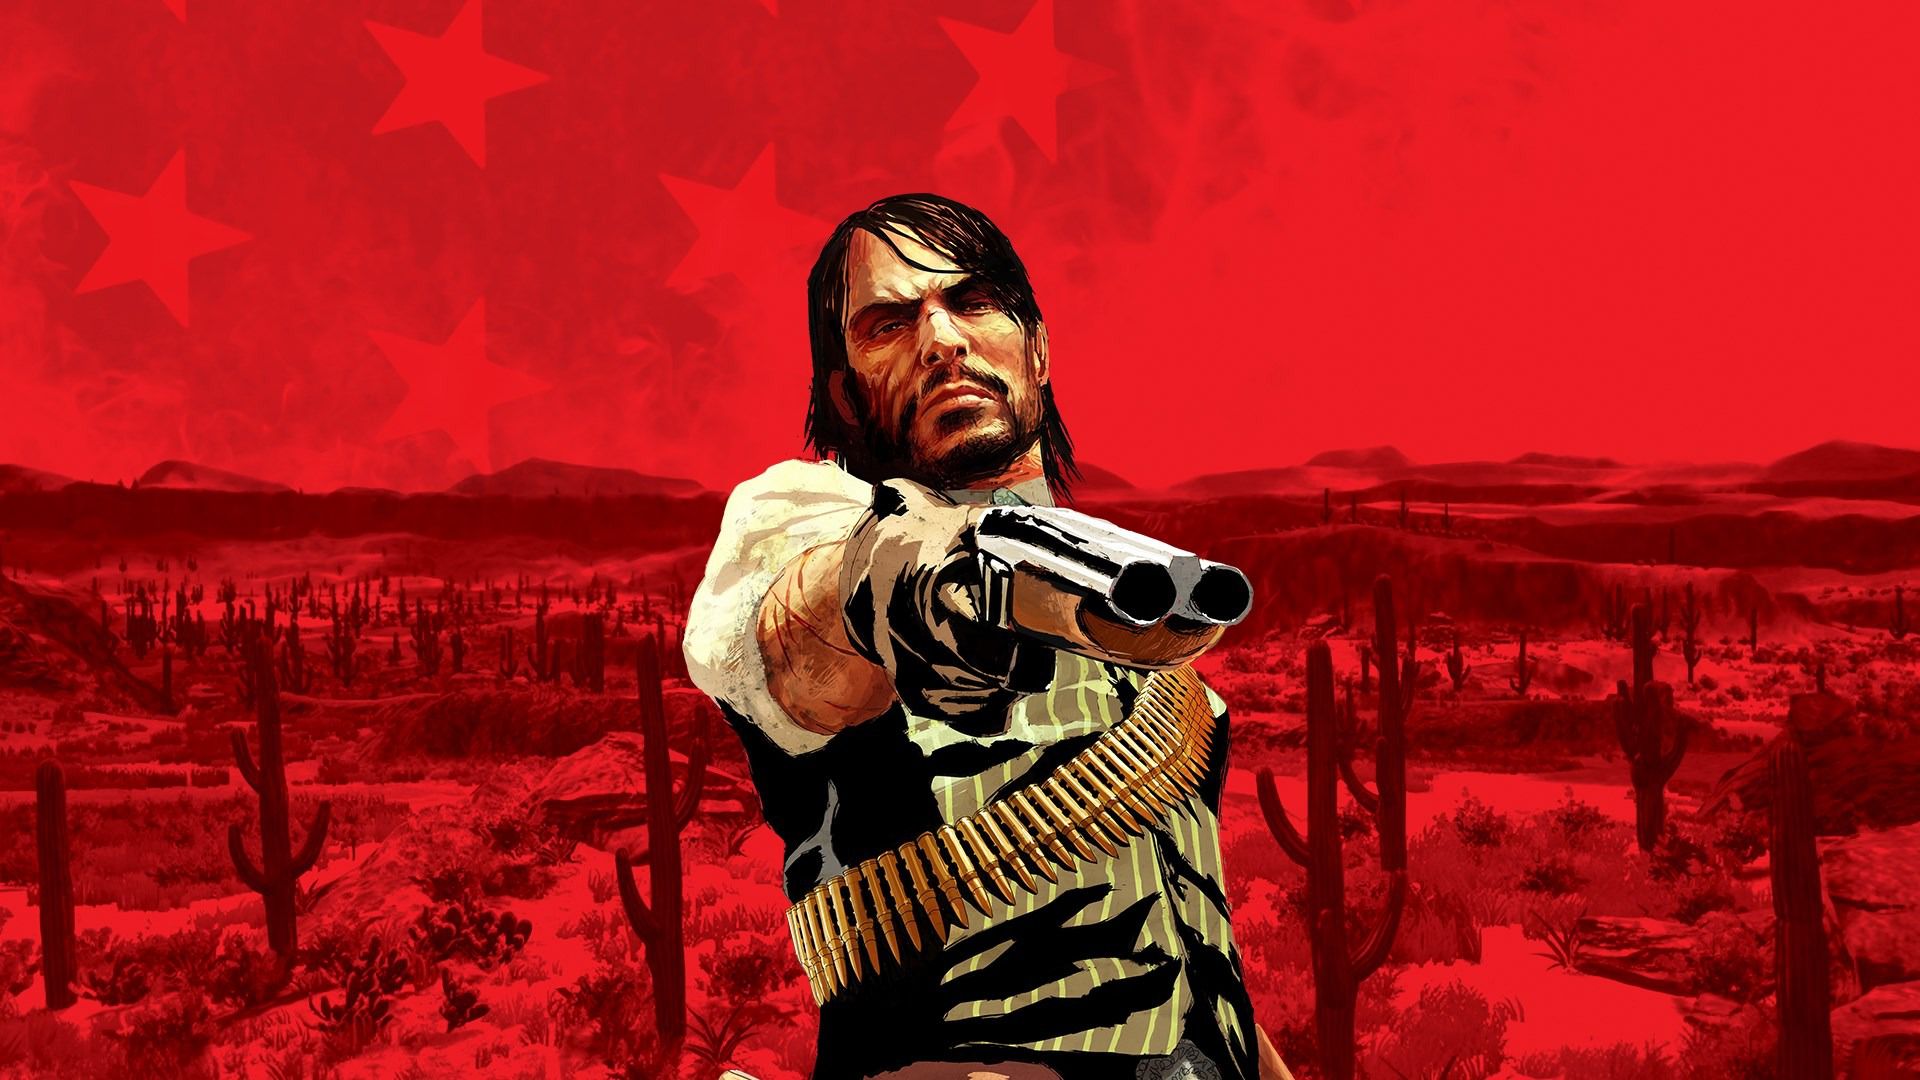 Jogo Red Dead Redemption PlayStation 3 Rockstar em Promoção é no